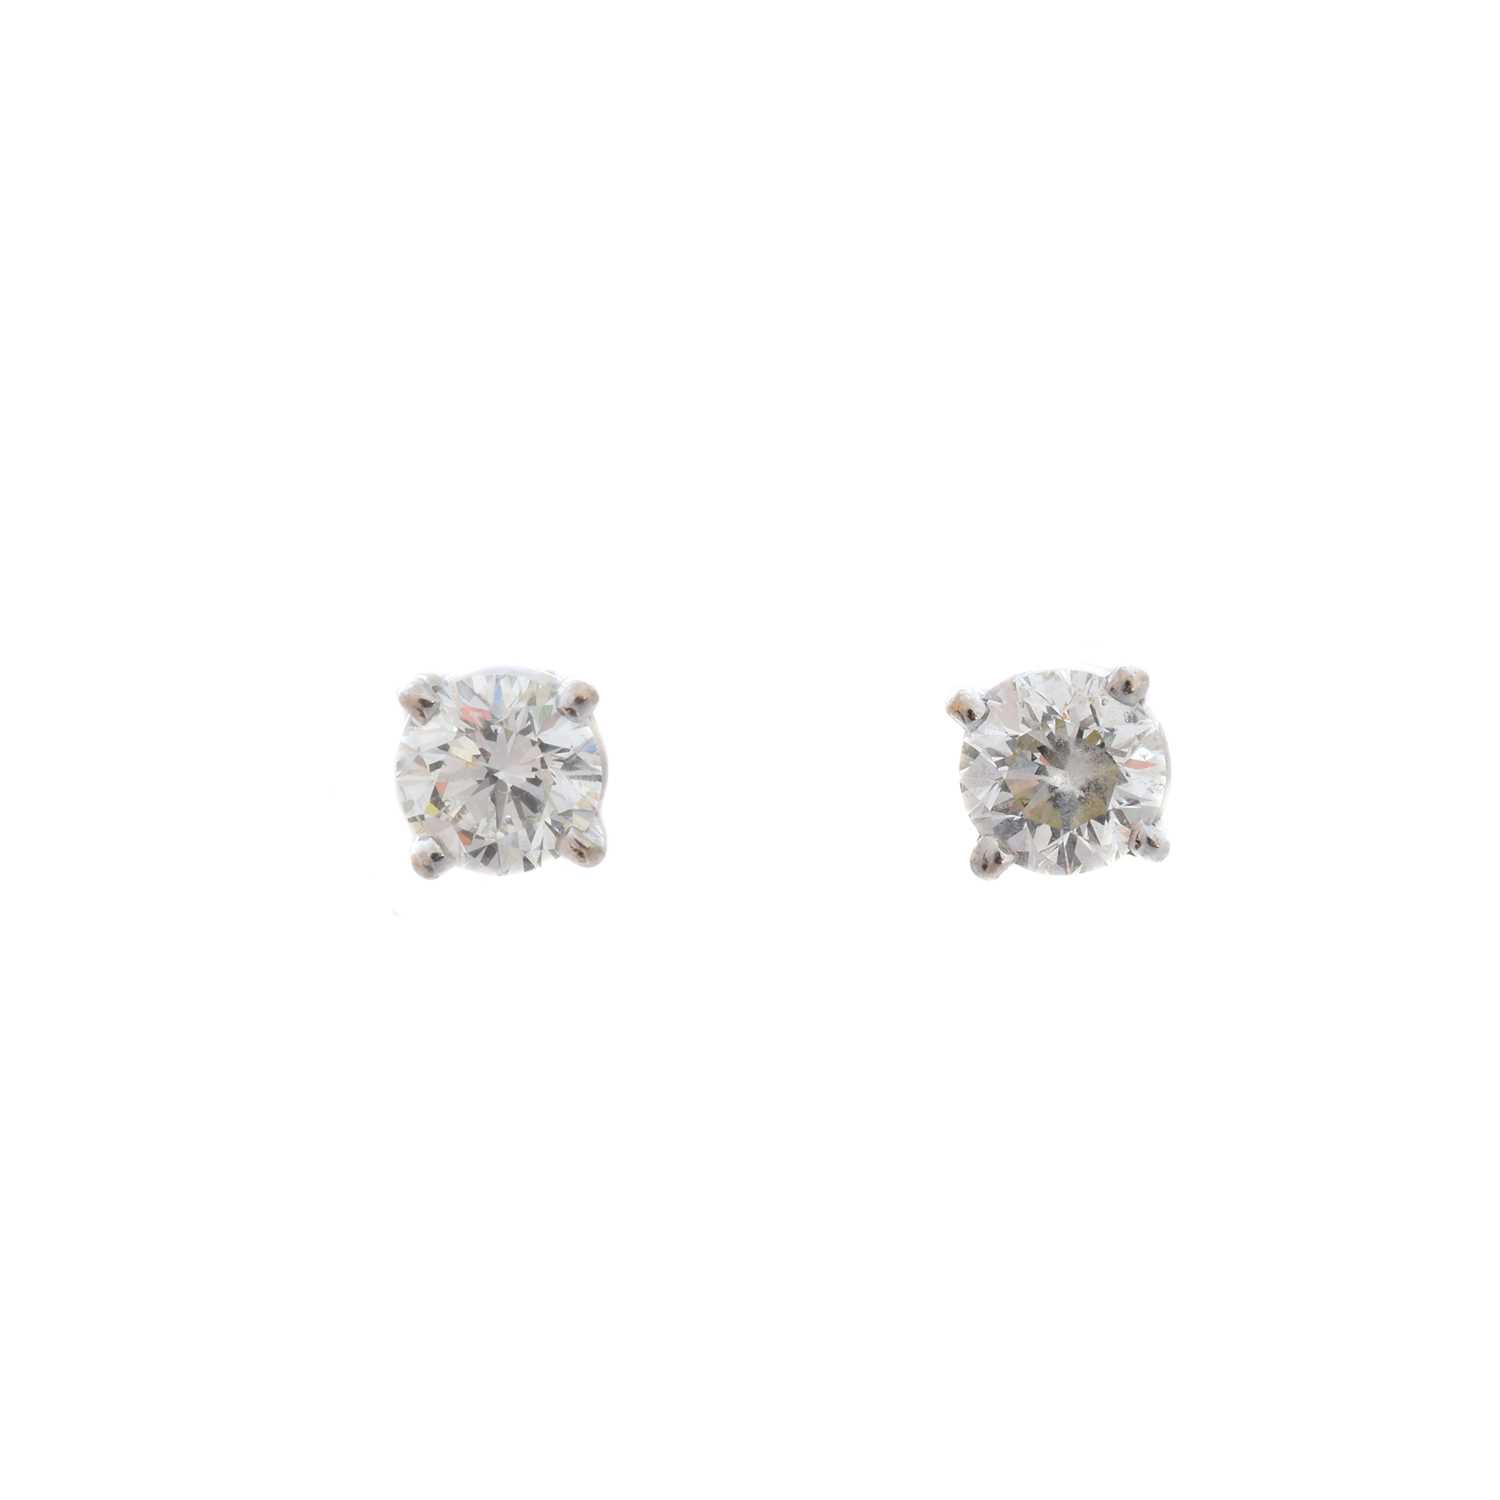 Lot 70 - A pair of brilliant-cut diamond stud earrings